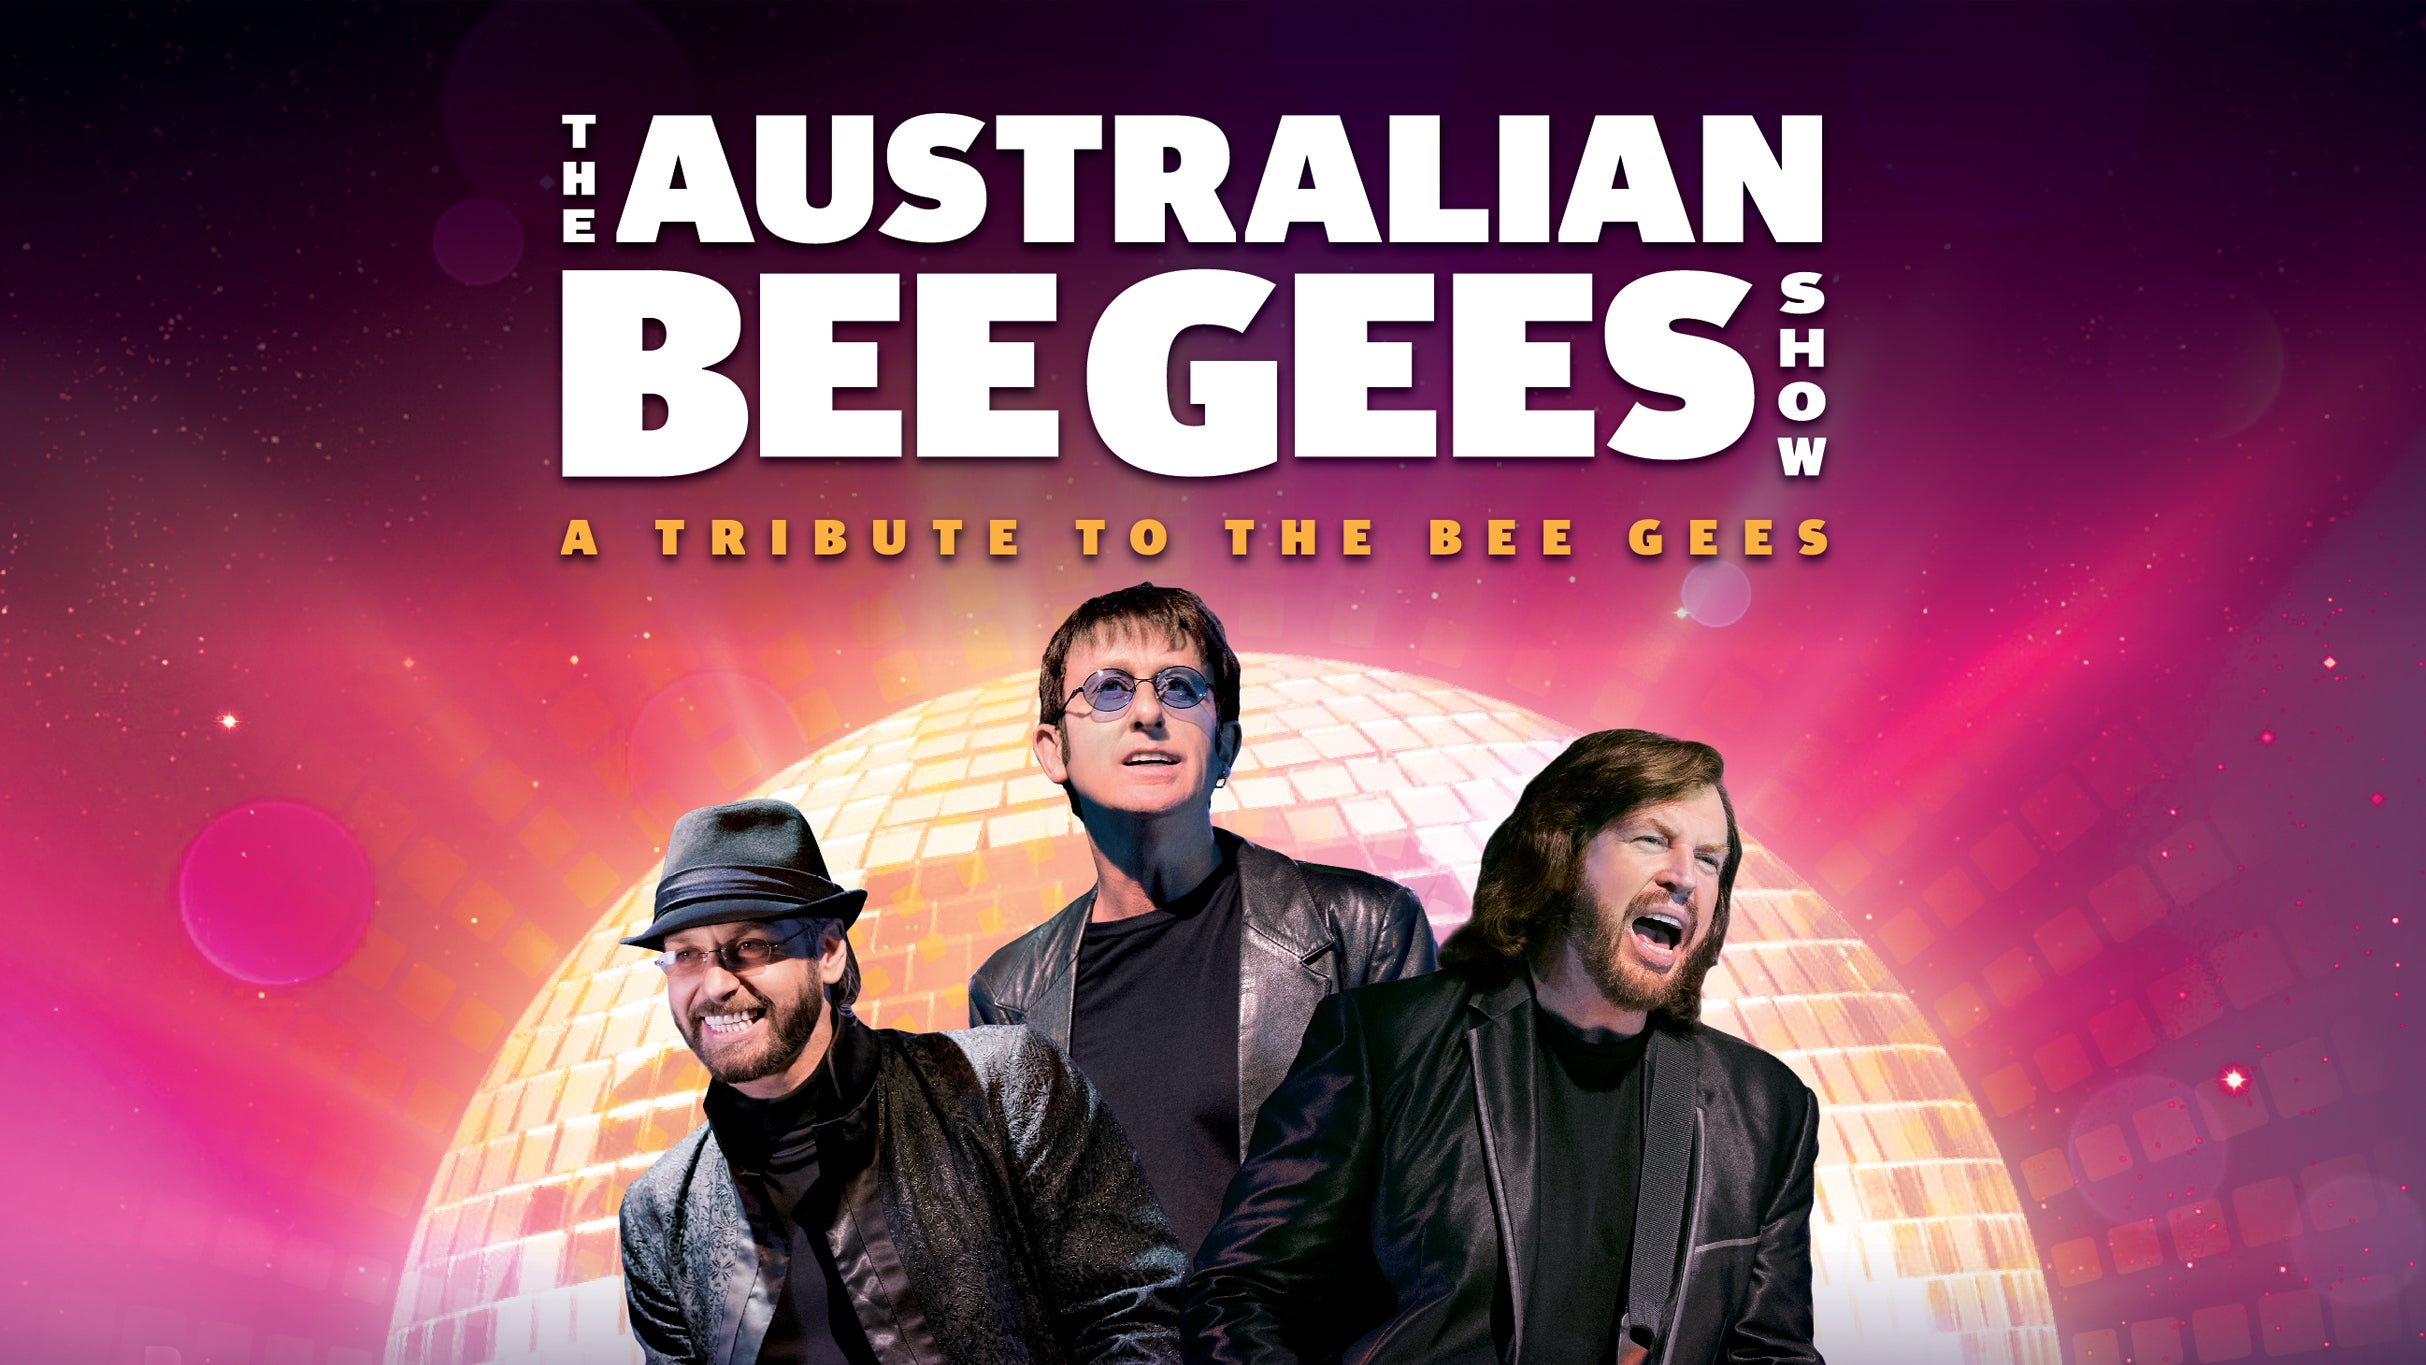 The Australian Bee Gees Show presales in Québec